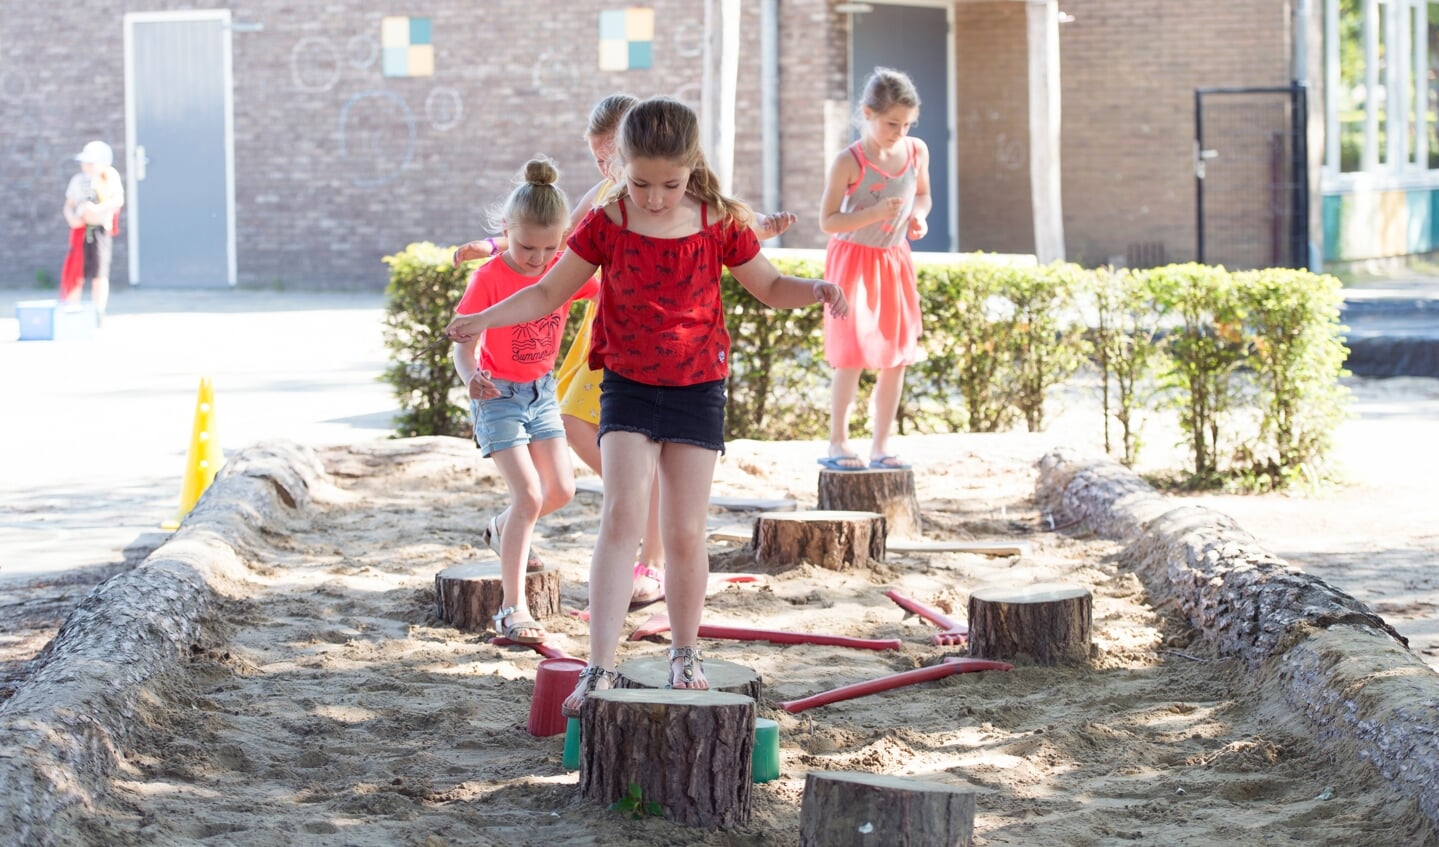 Op het schoolplein van de Looschool is het goed spelen. Foto: Yke Ruessink